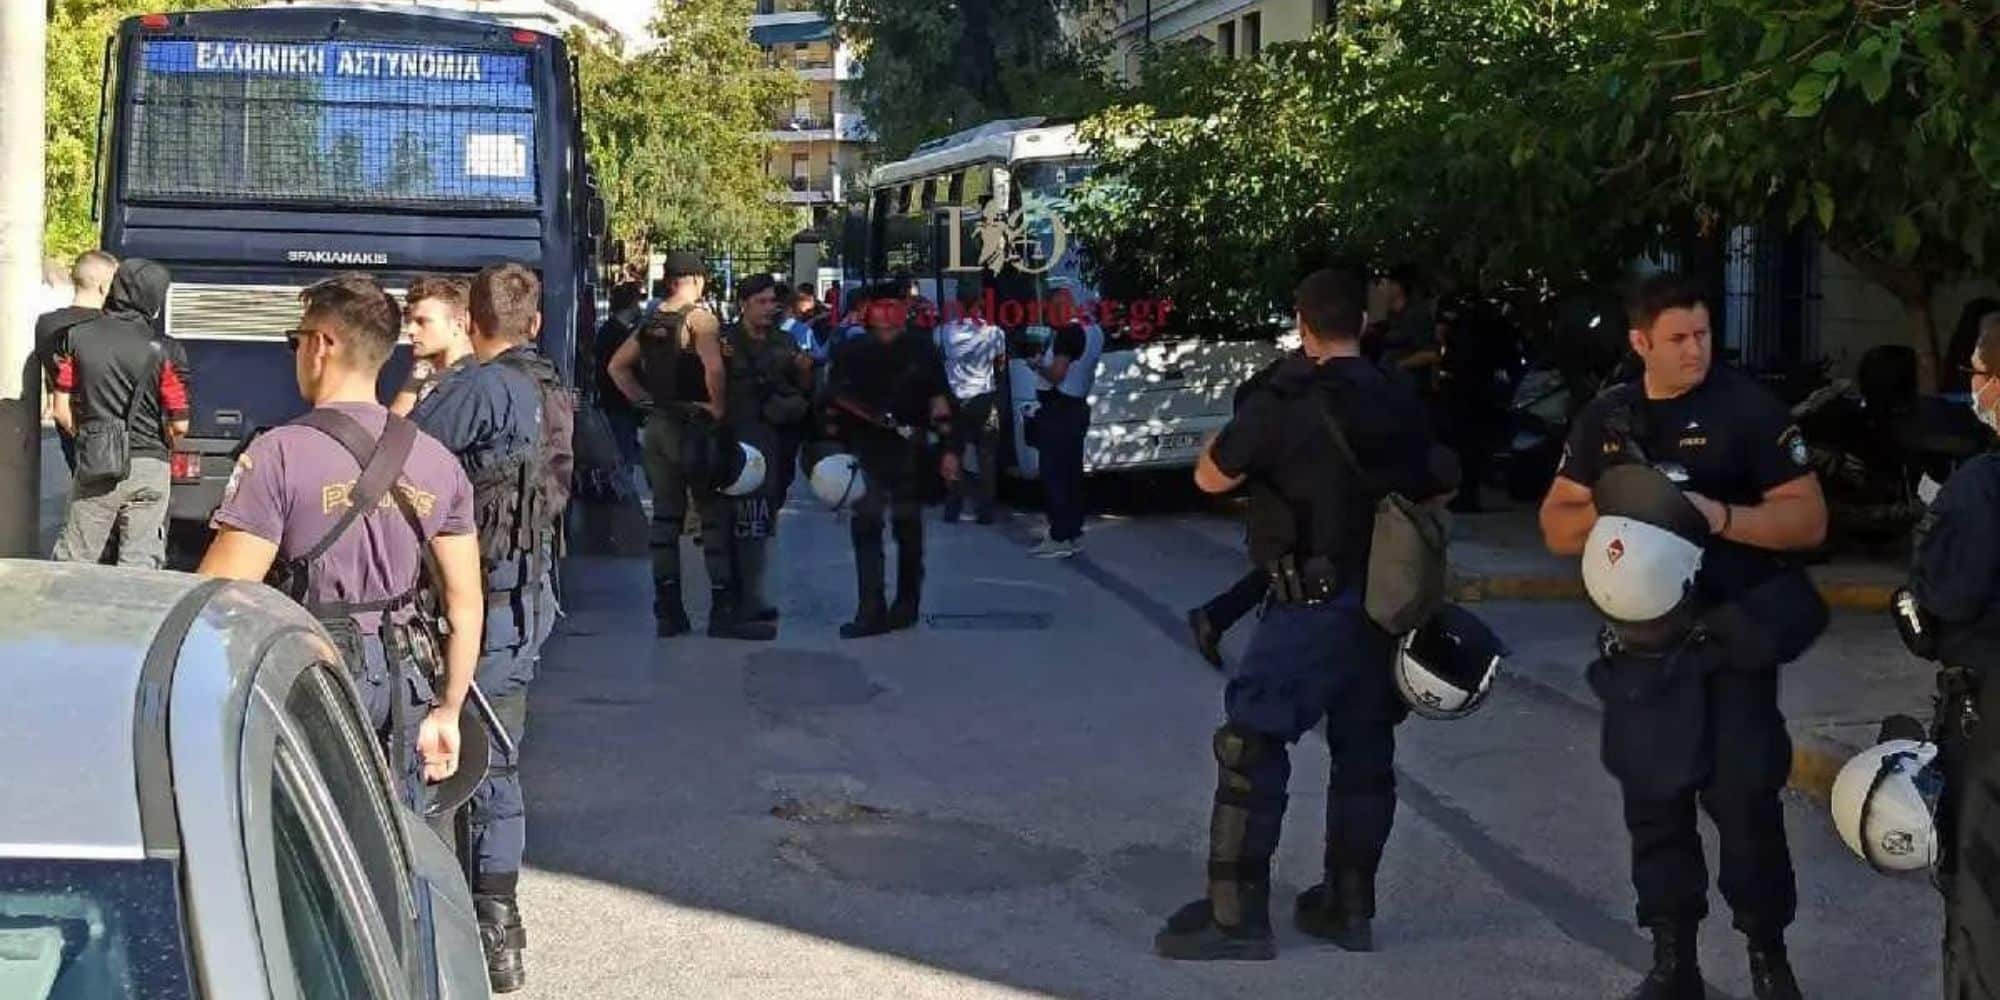 Πολυτεχνειούπολη Ζωγράφου: Στην Ευελπίδων οι πρώτοι 16 συλληφθέντες - Σοκάρουν οι διάλογοι της συμμορίας (εικόνες & βίντεο)